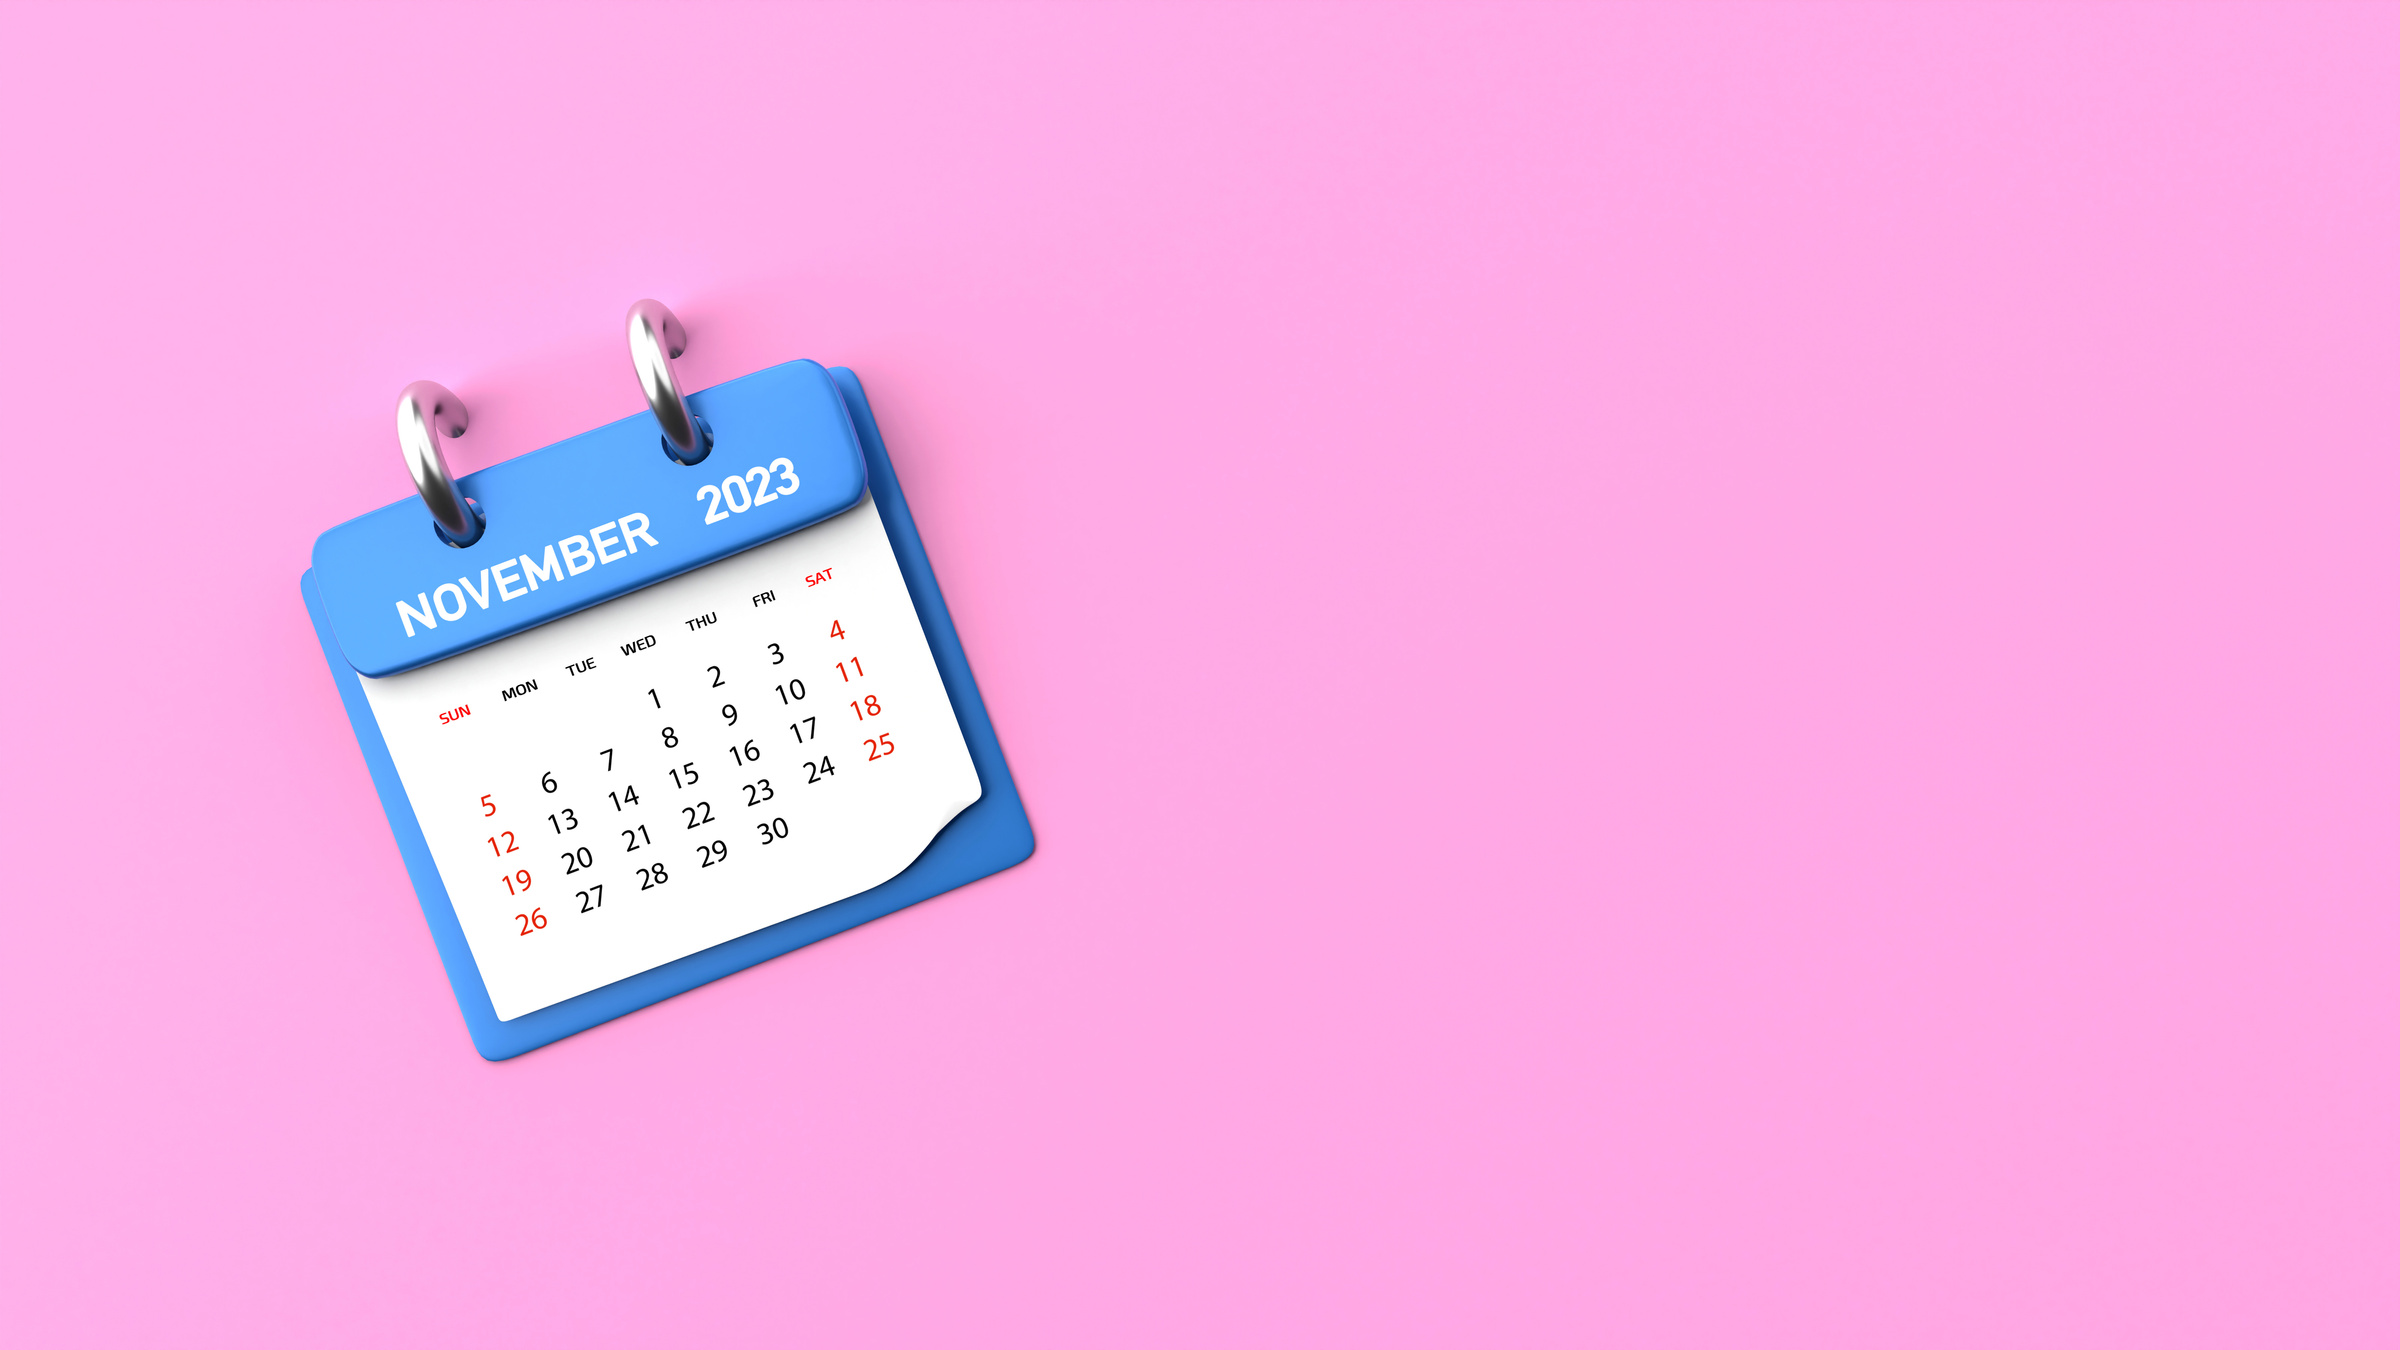 2023 November Calendar on Pink Background